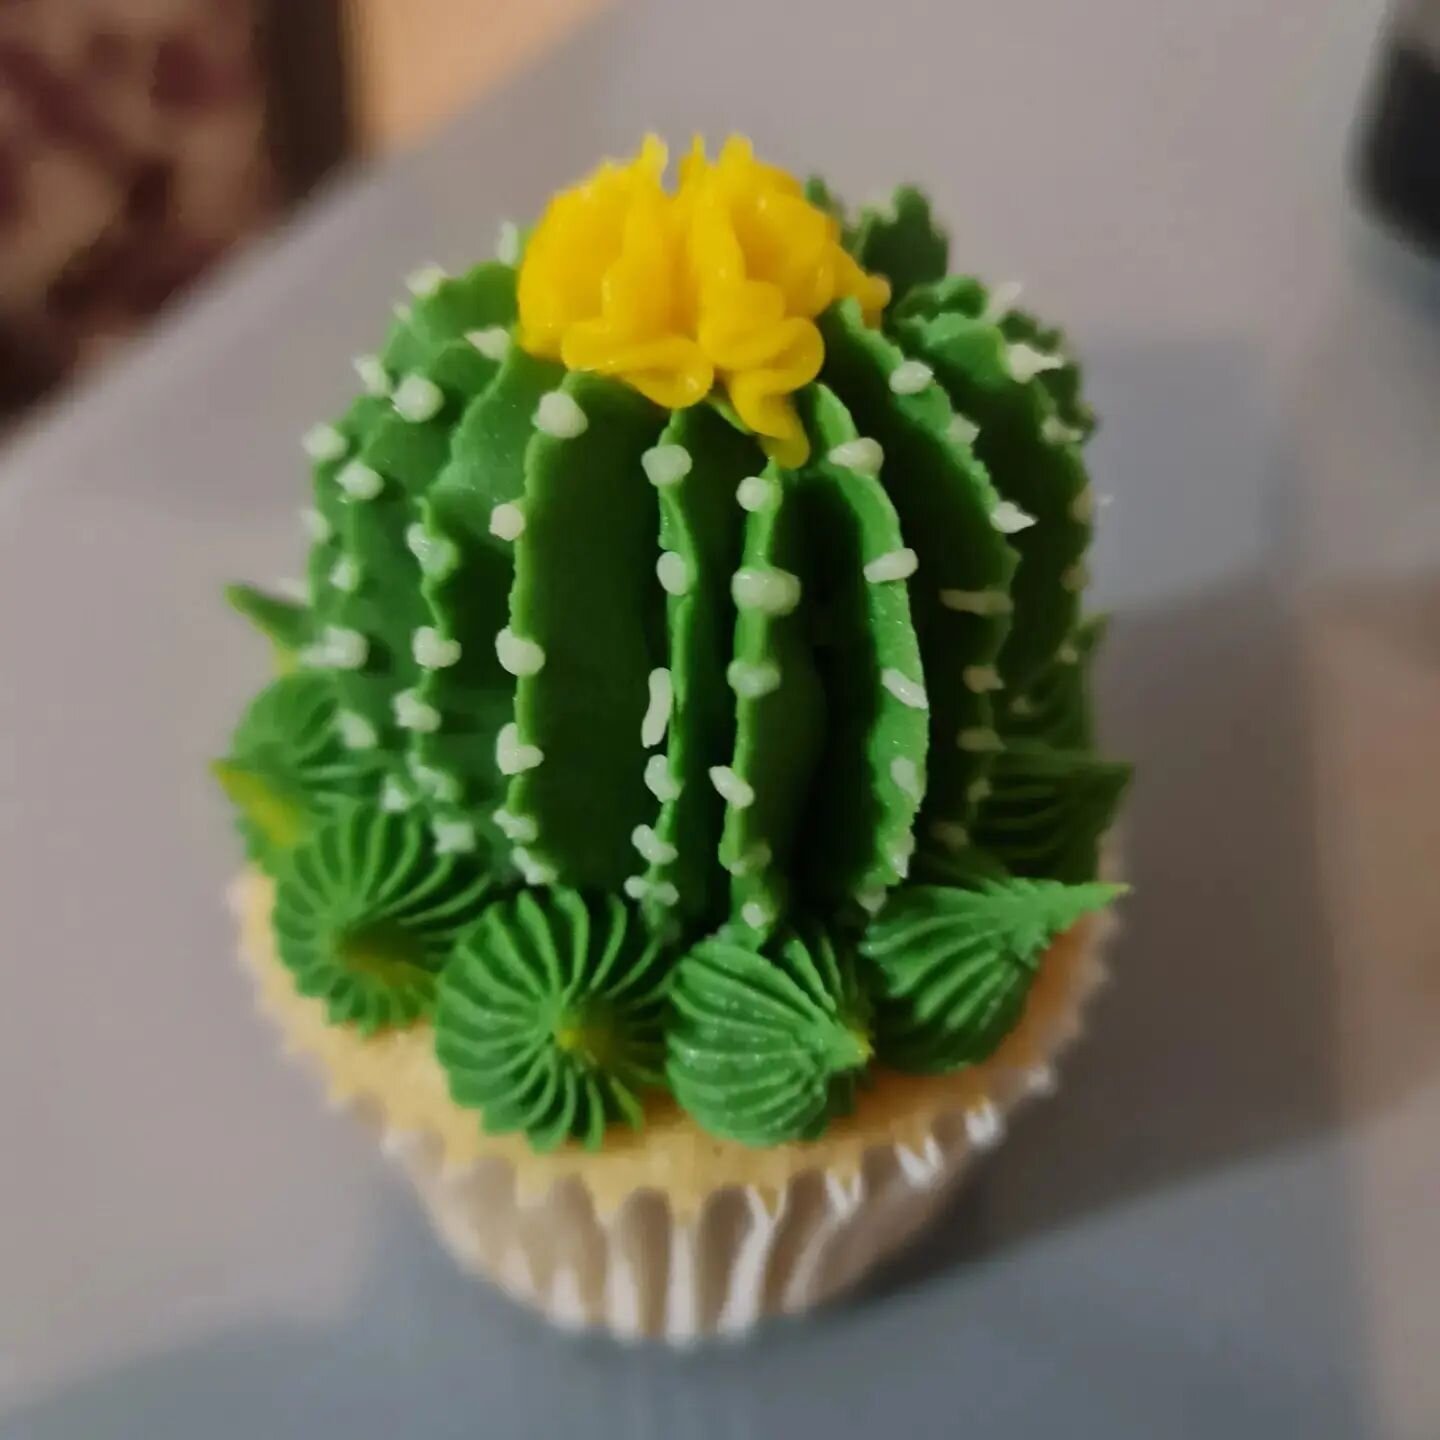 Just a little cactus 🌵 

#haywardsheathcakes #haywardsheath #westsussexcakes #brightonhove #brightoncakes #Lindfieldcakes #Lindfield